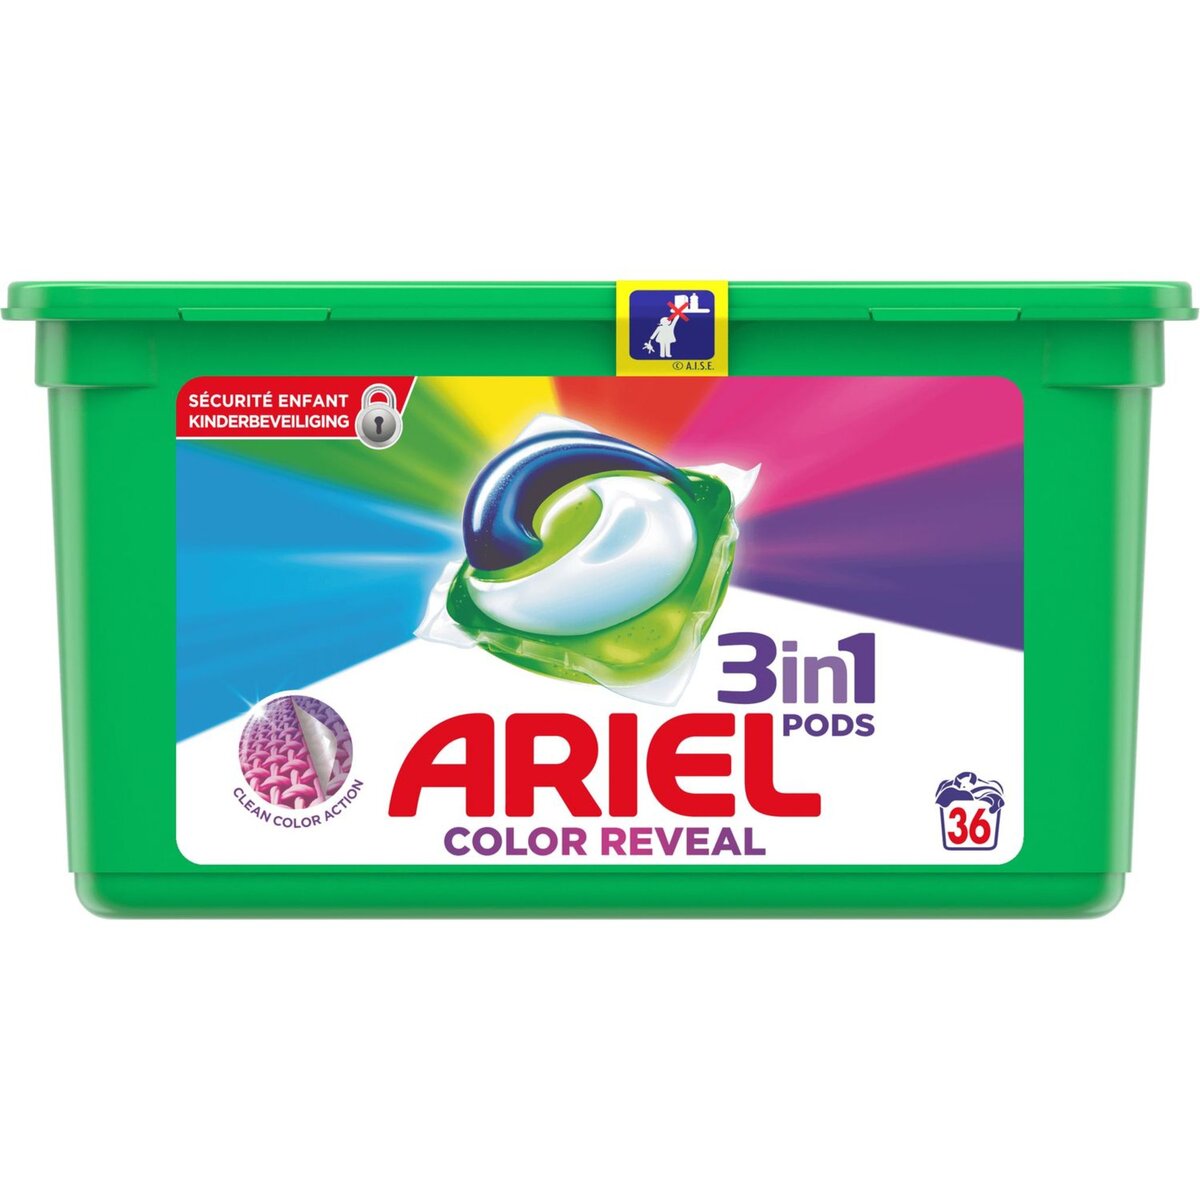 ARIEL Ariel Pods Lessive capsules color reveal 36 lavages 36 lavages 36 capsules